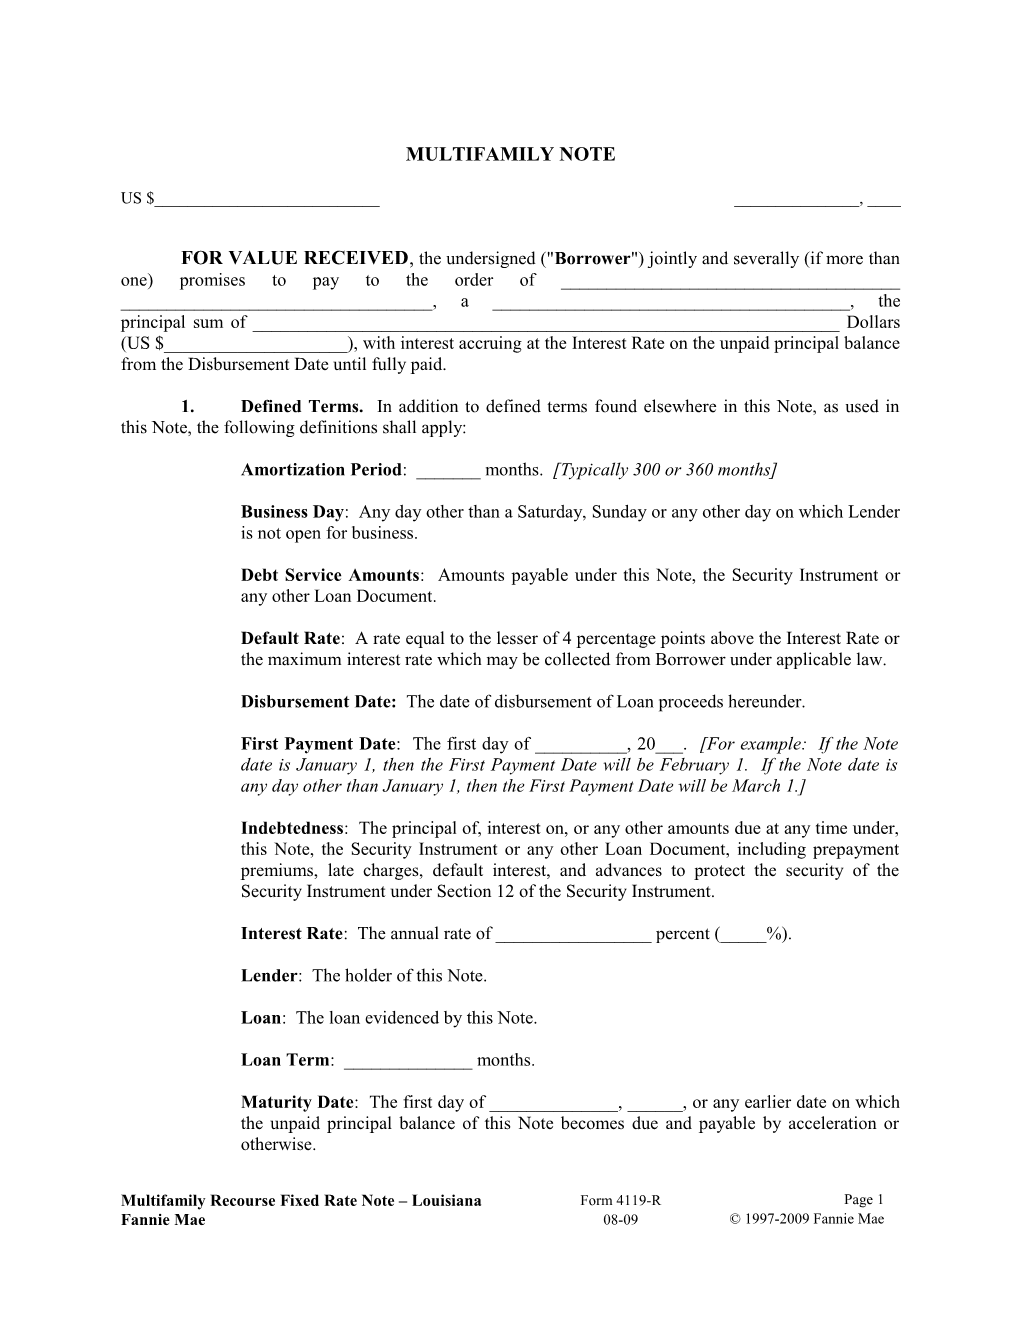 Multifamily Form 4119-R Louisiana